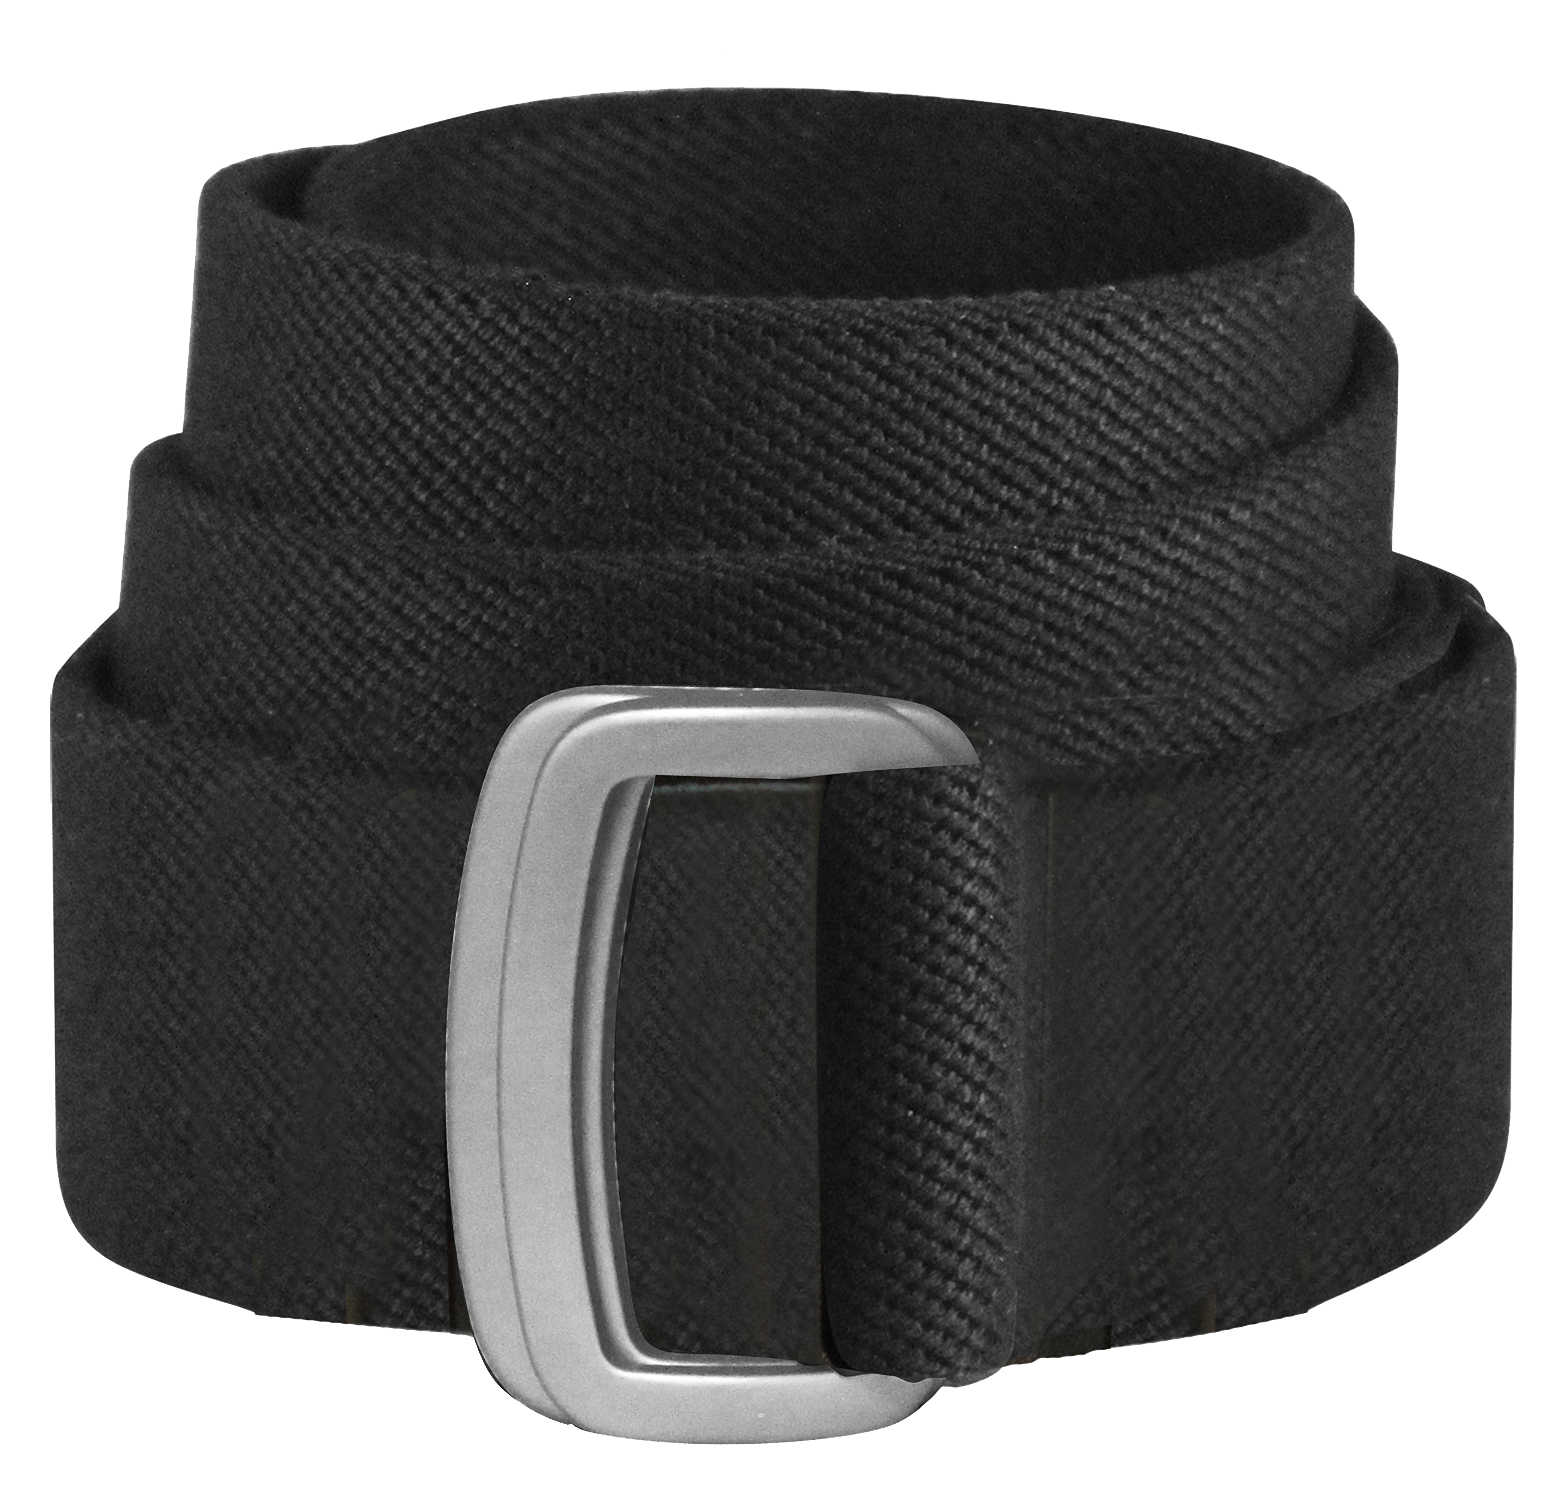 Bison Designs Subtle Cinch Belt for Men - Black - 2XL